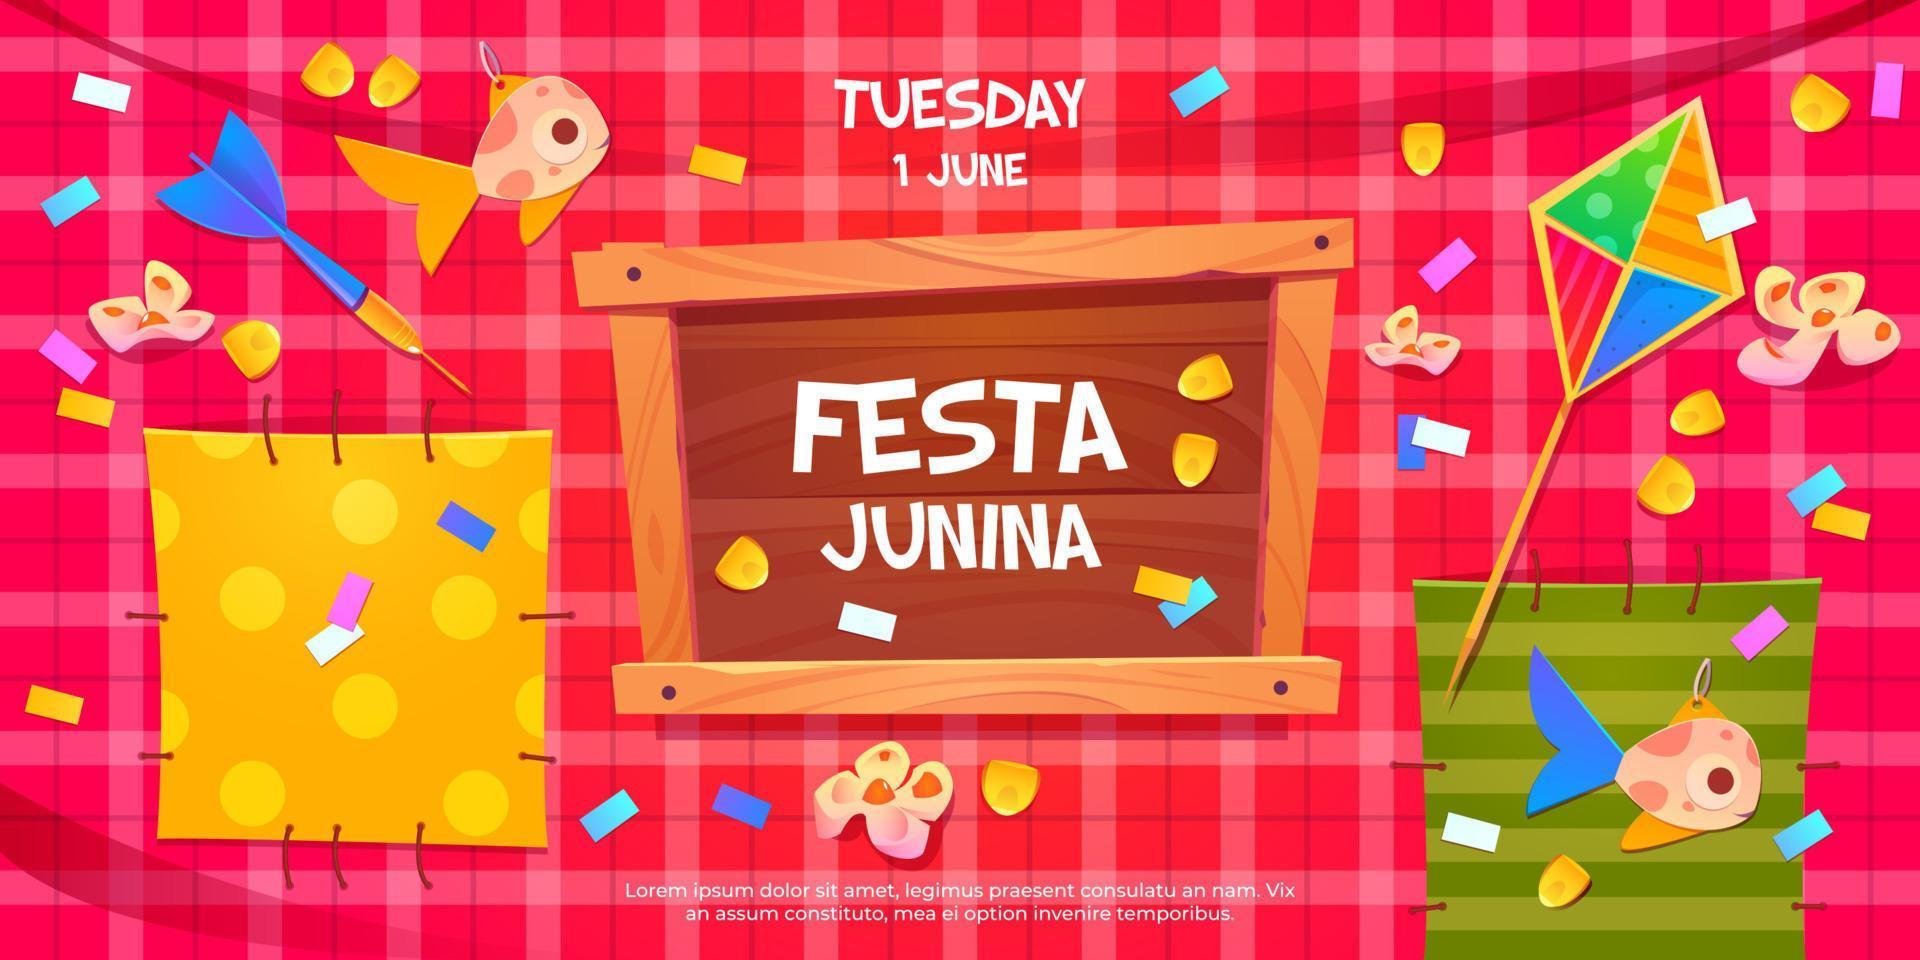 Festa Junina cartoon flyer, invitation on party vector